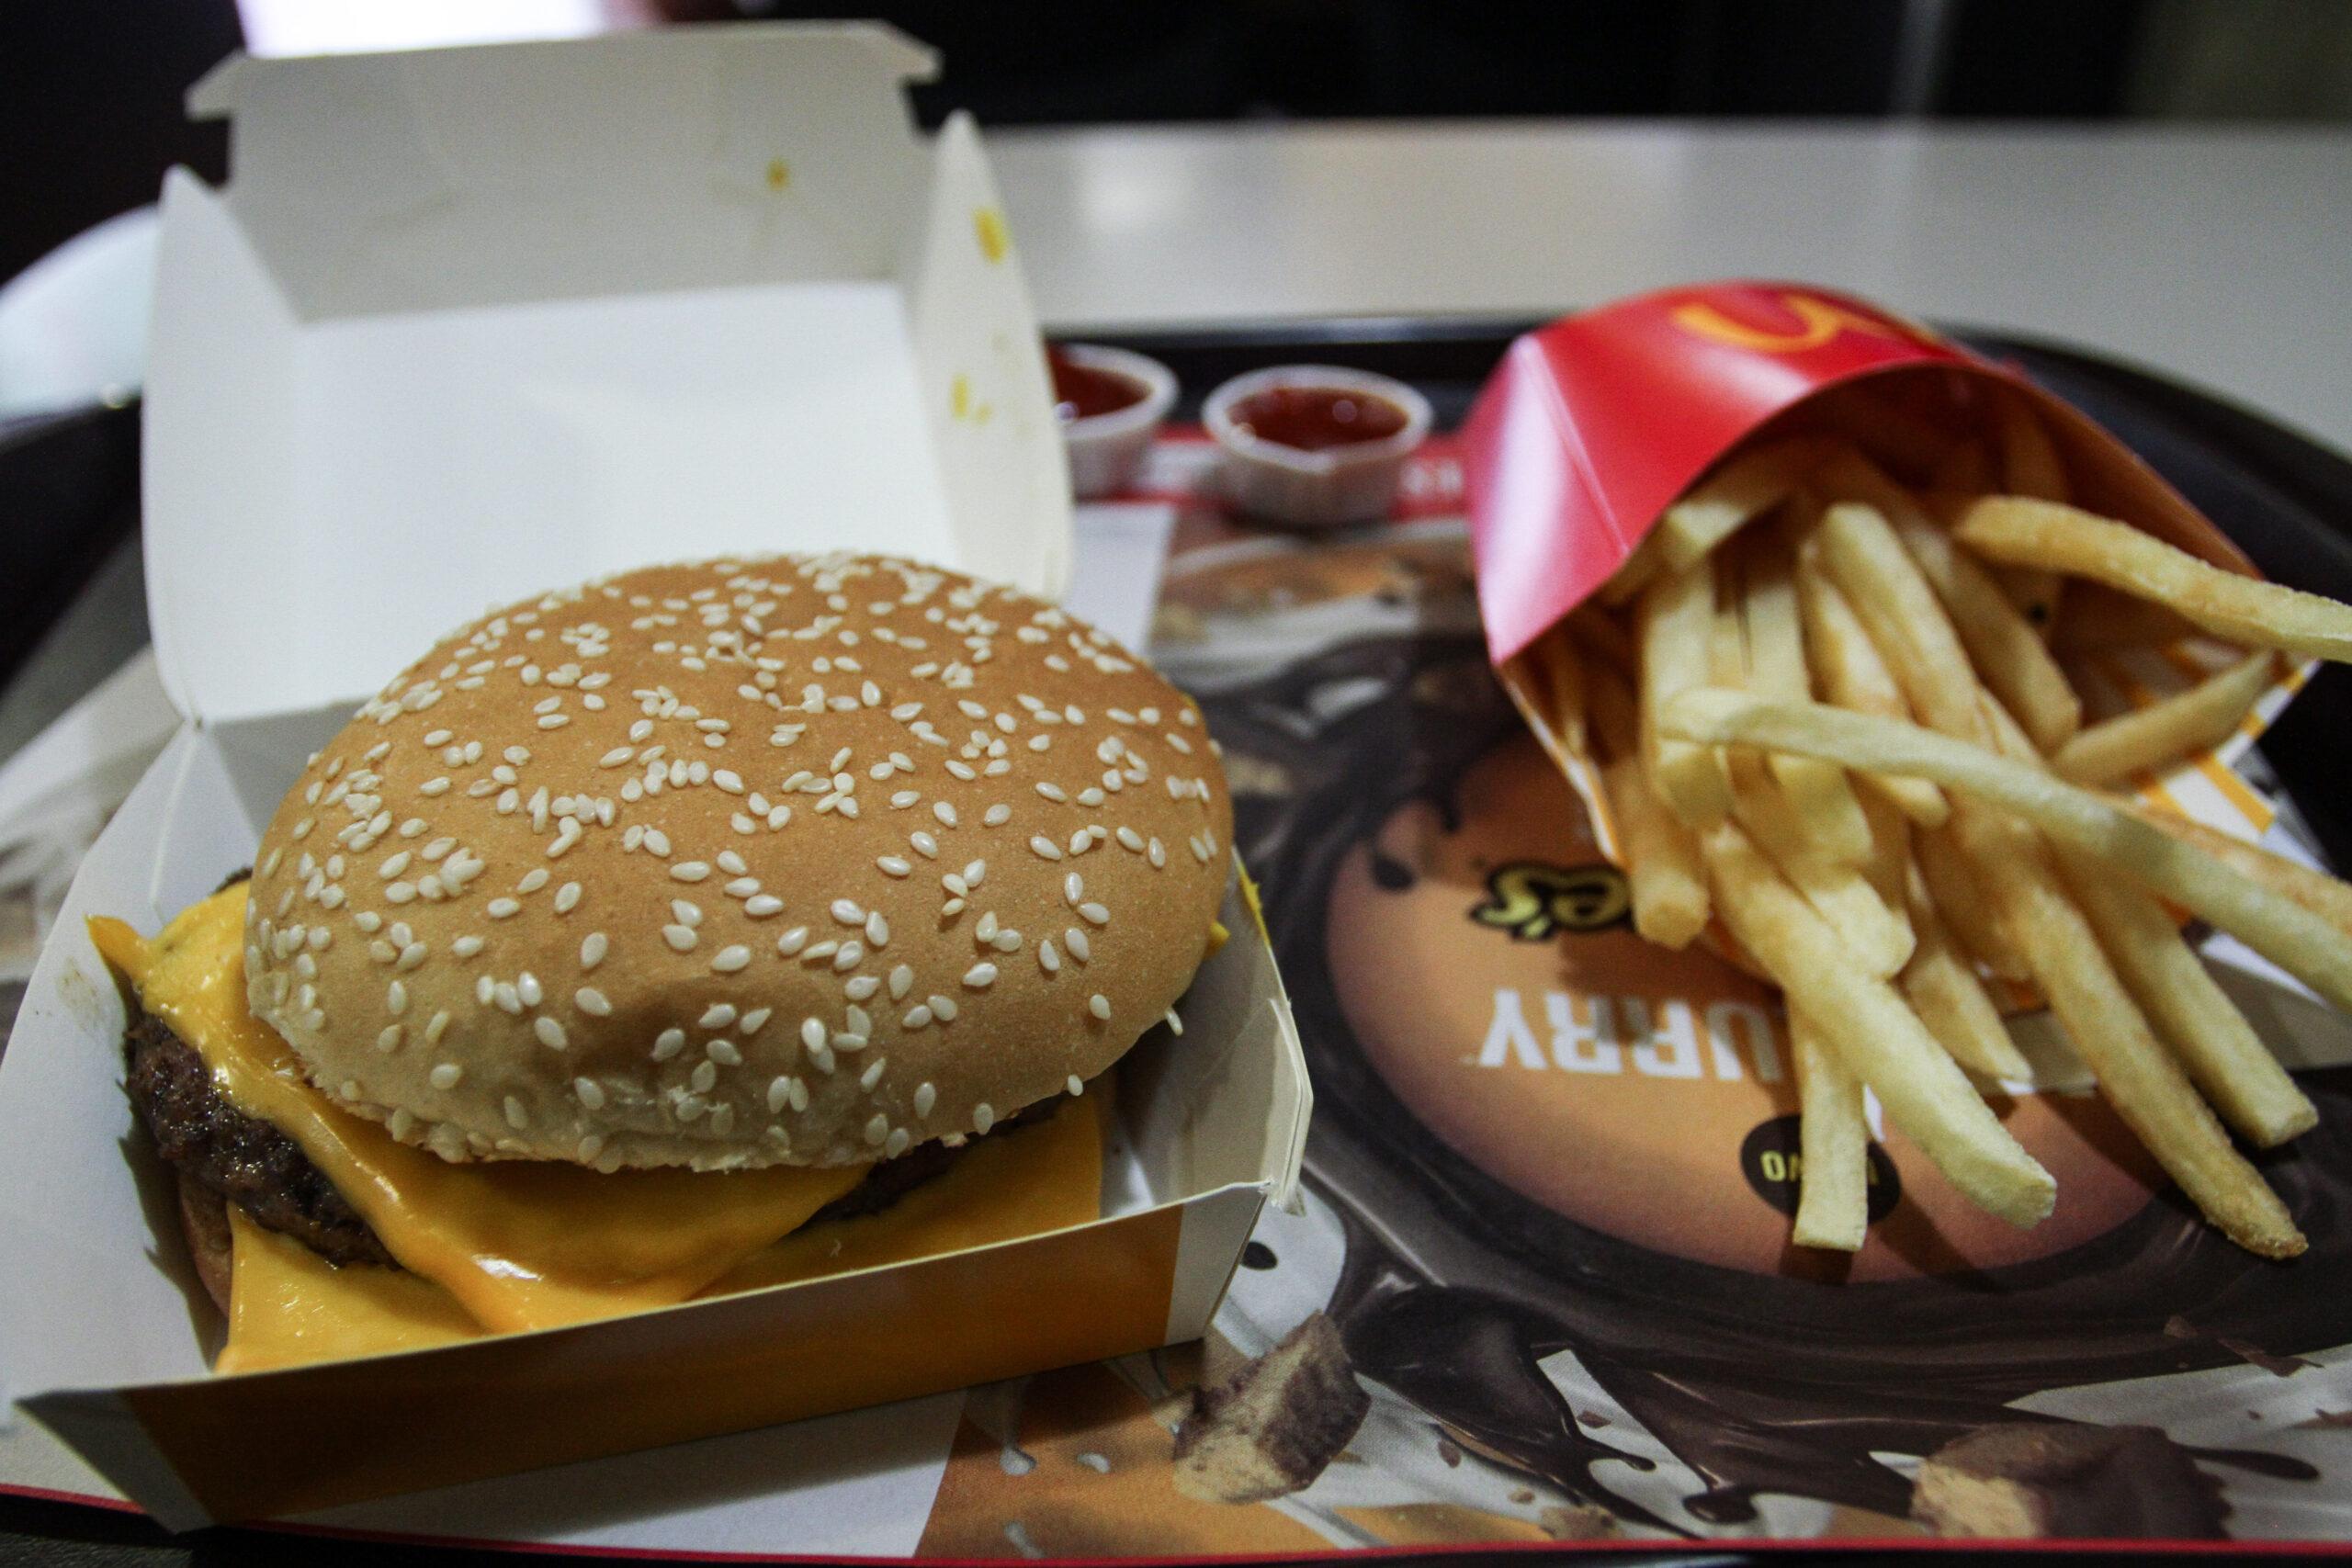 McDonald’s denunciará a la persona que puso una cabeza de rata en hamburguesa